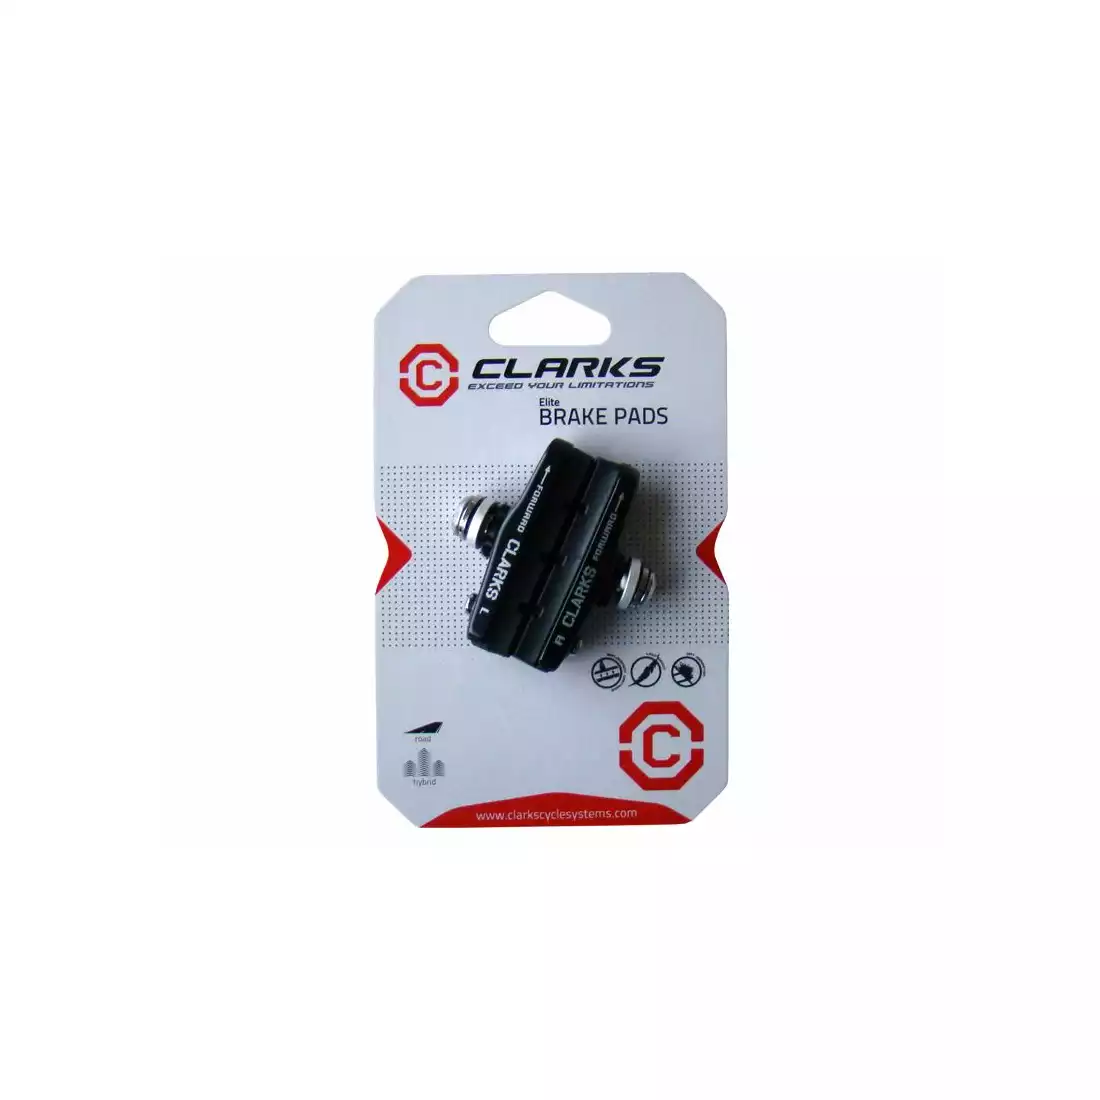 CLARKS CPS459 Silniční brzdové destičky Campagnolo/Shimano 105SC, Ultegra, Dura-Ace